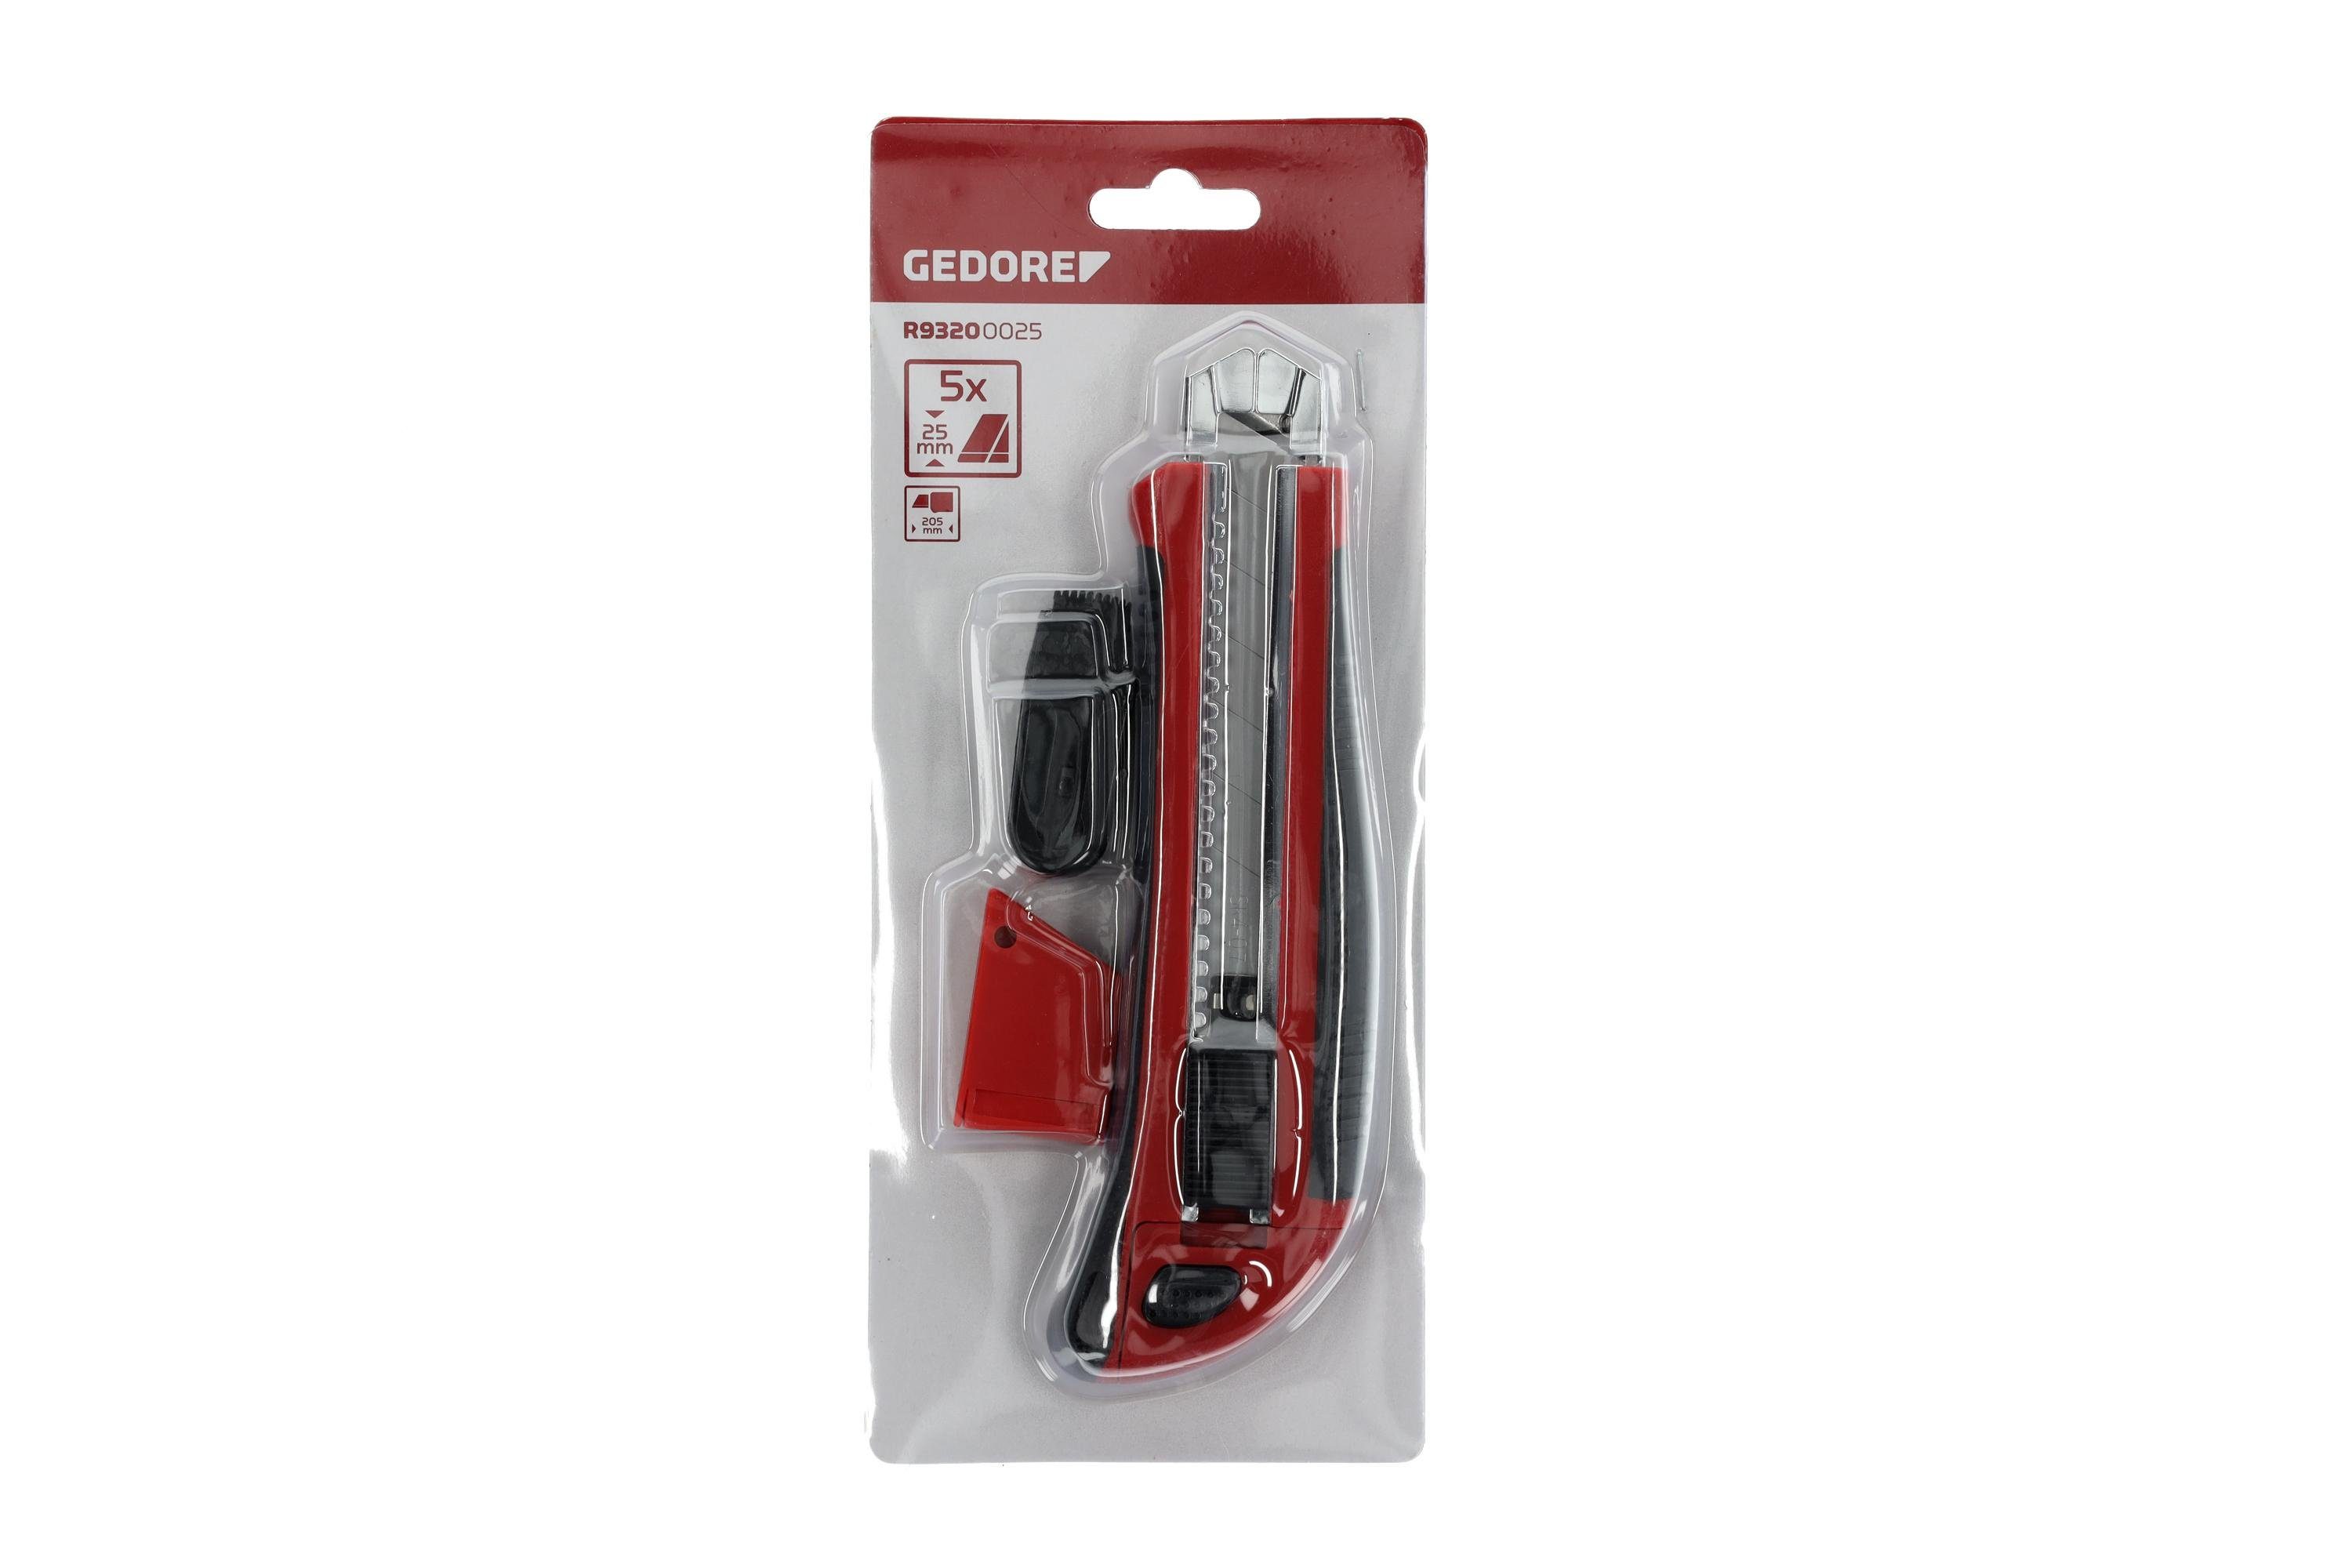 Cuttermesser Klingenbreite mm mit Cuttermesser Clip 25 R93200025 Red Gedore 5